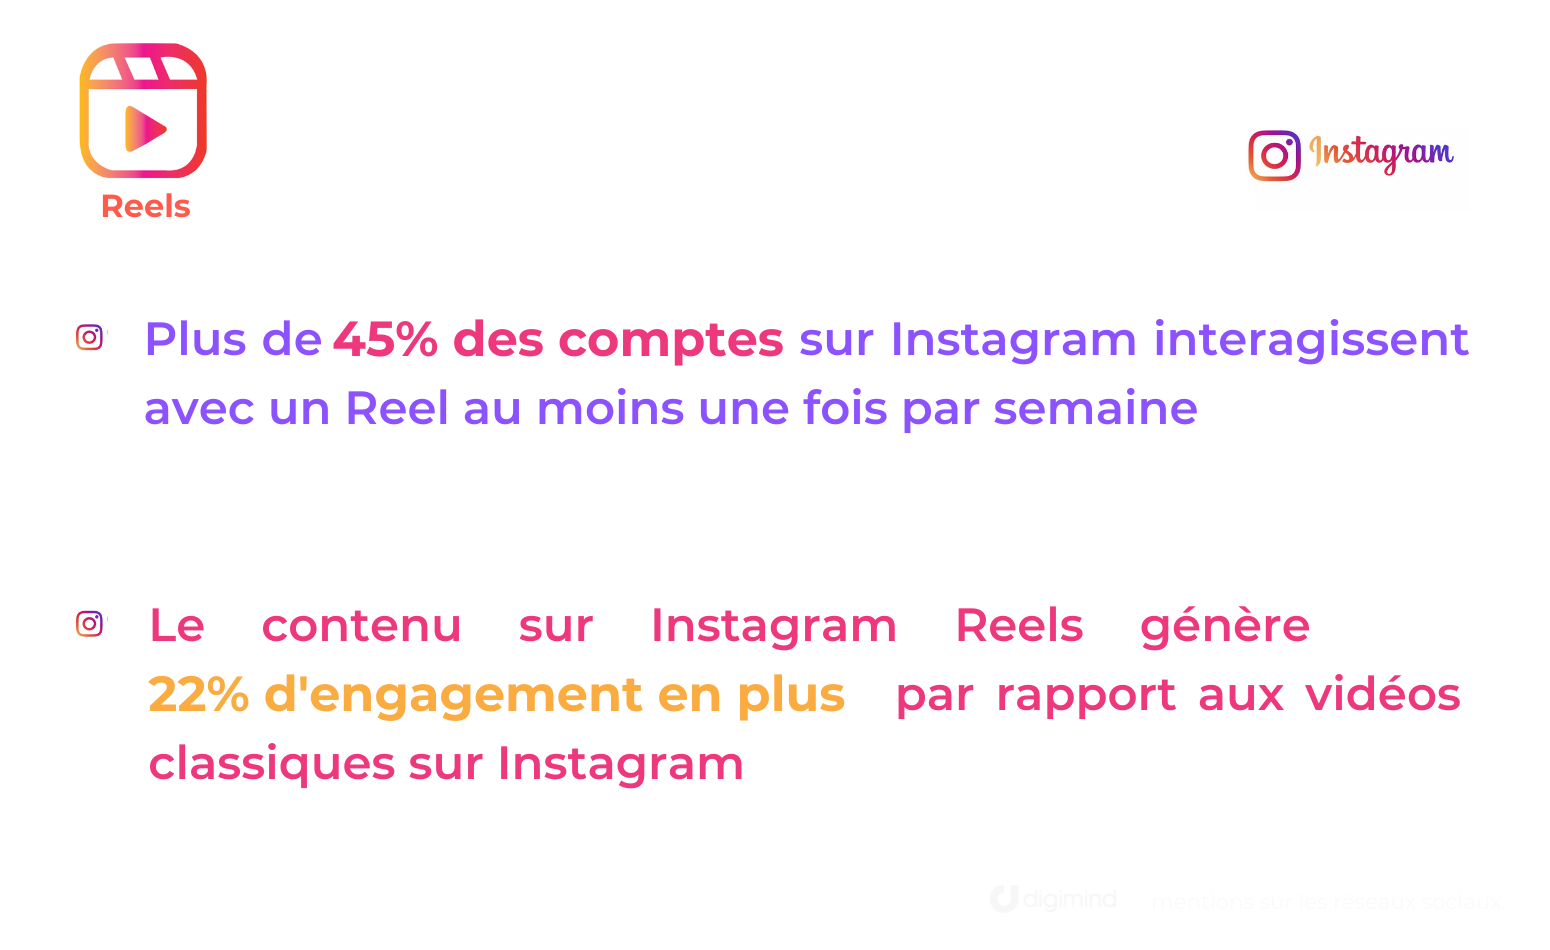 Quelques chiffres sur Instagram Reels